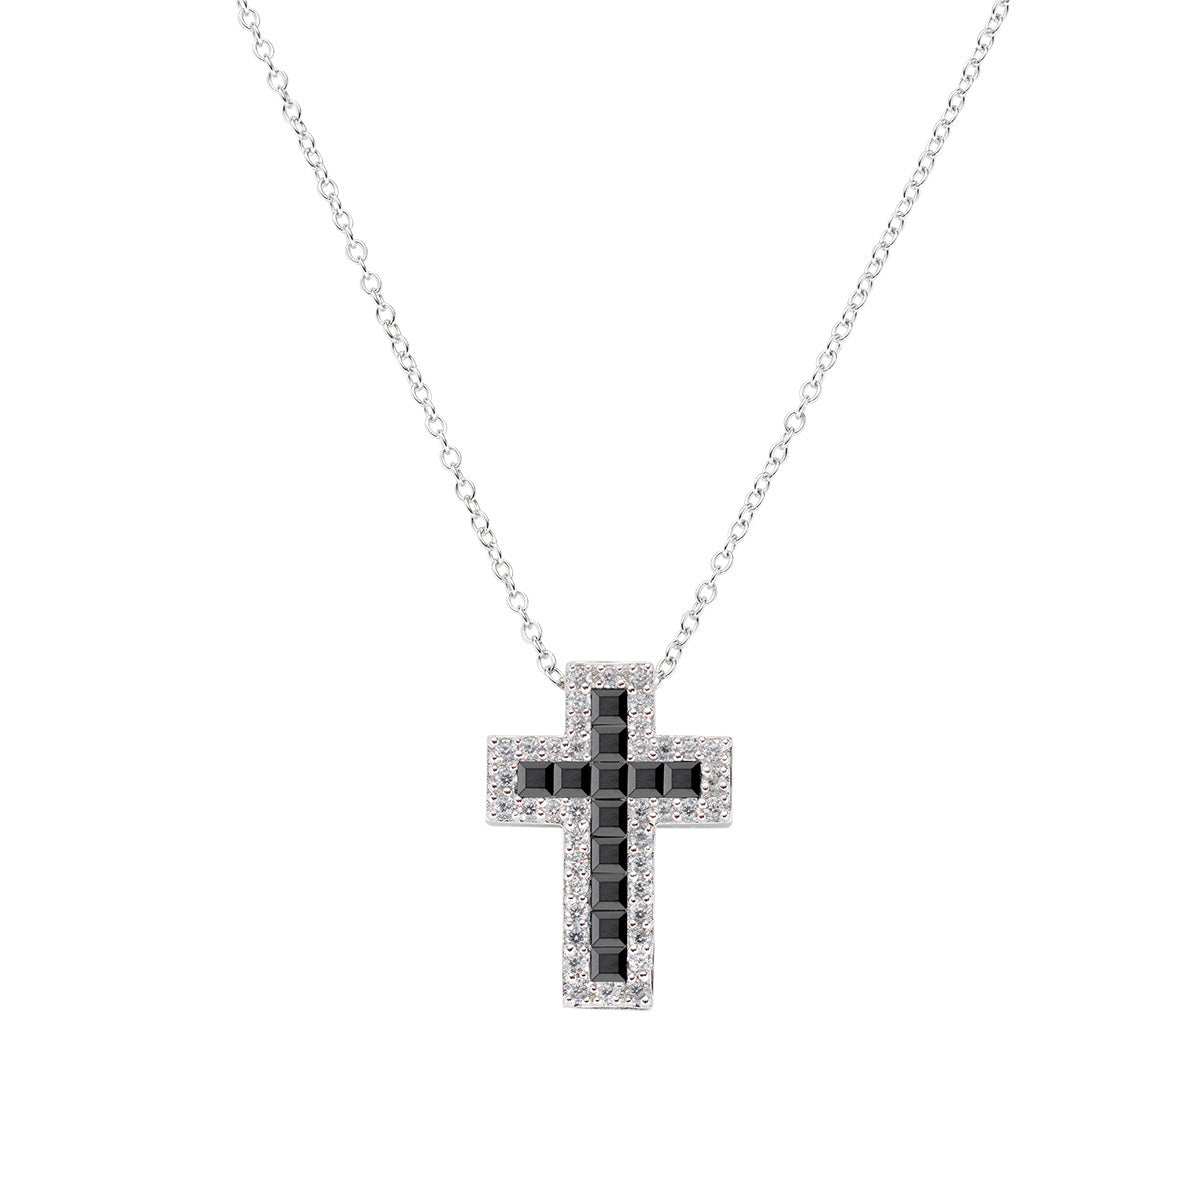 Amen collana croce con zirconi bianchi e neri - CLCRREBBNZ1